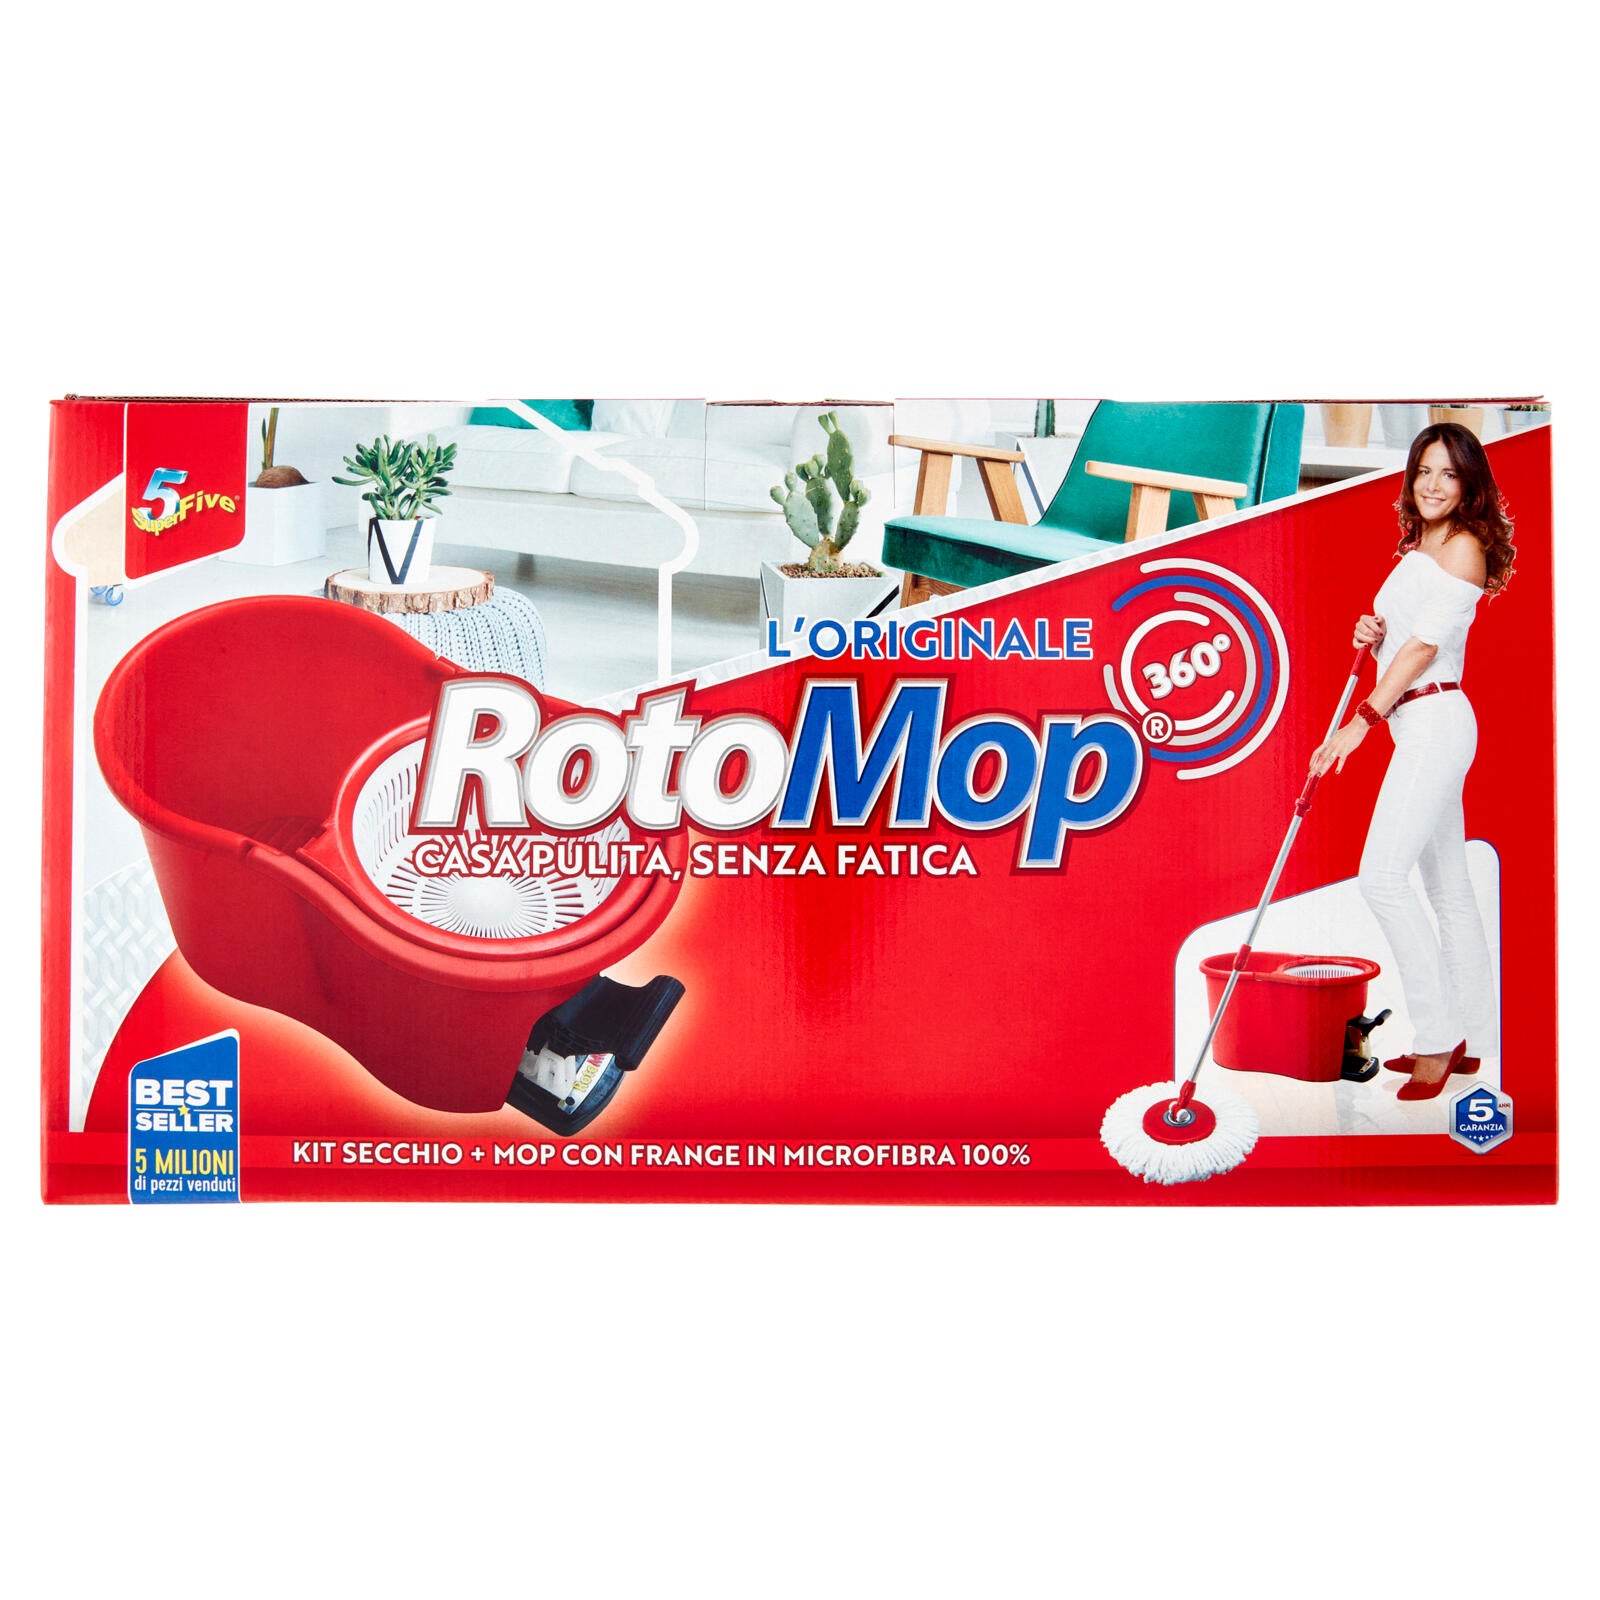 Super5 RotoMop 360° Kit Secchio + Mop con Frange in Microfibra 100% ->